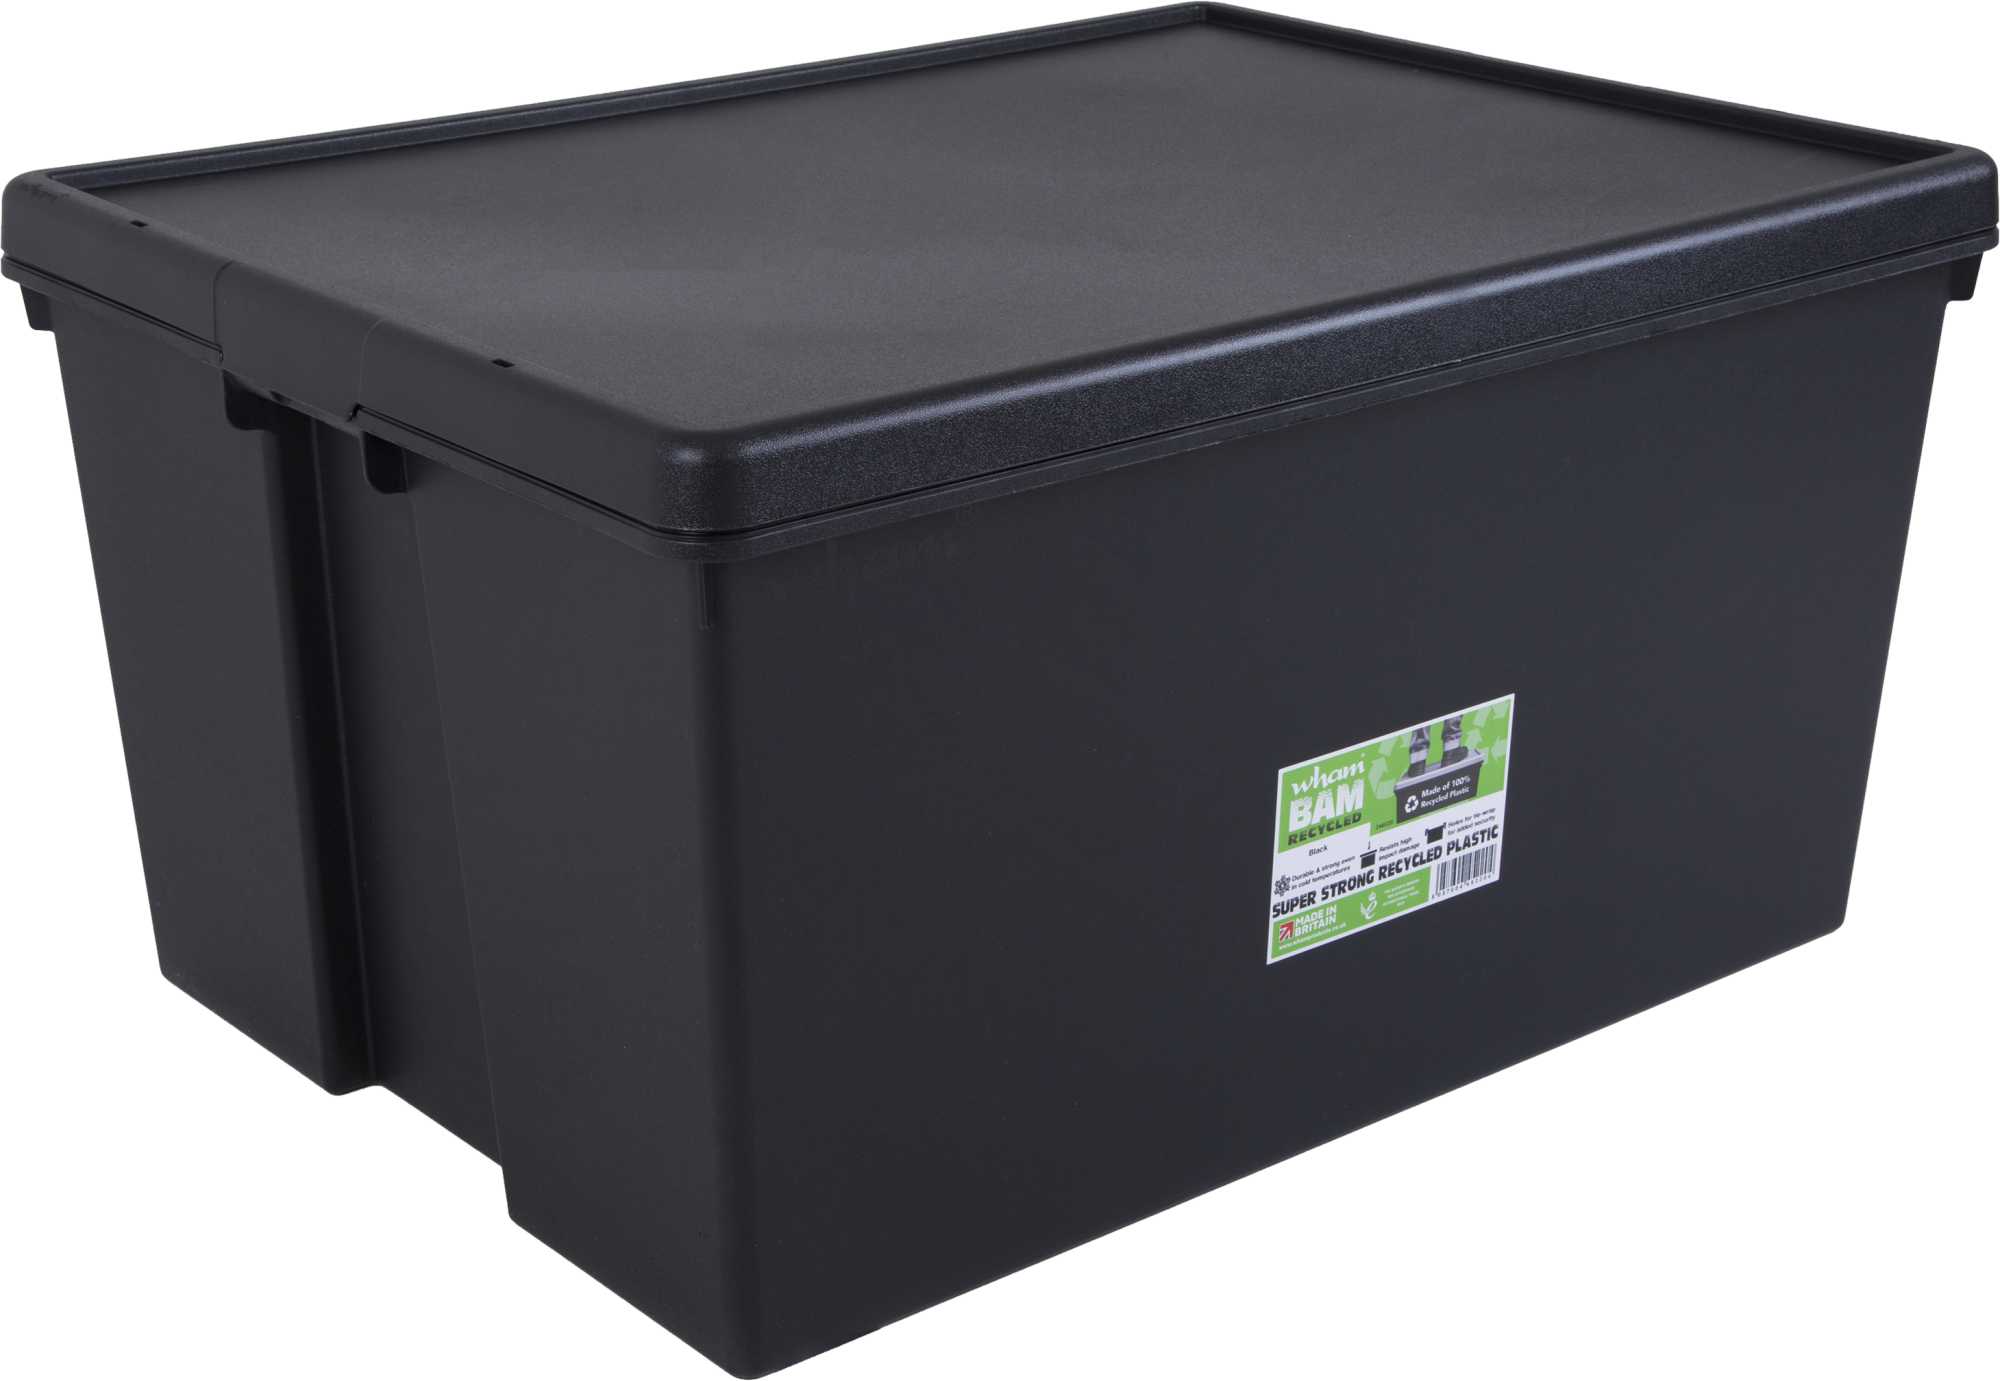 Desear fusible Hospitalidad Caja BAMBOX reciclada negro de 42x59x80 cm 150L | Leroy Merlin